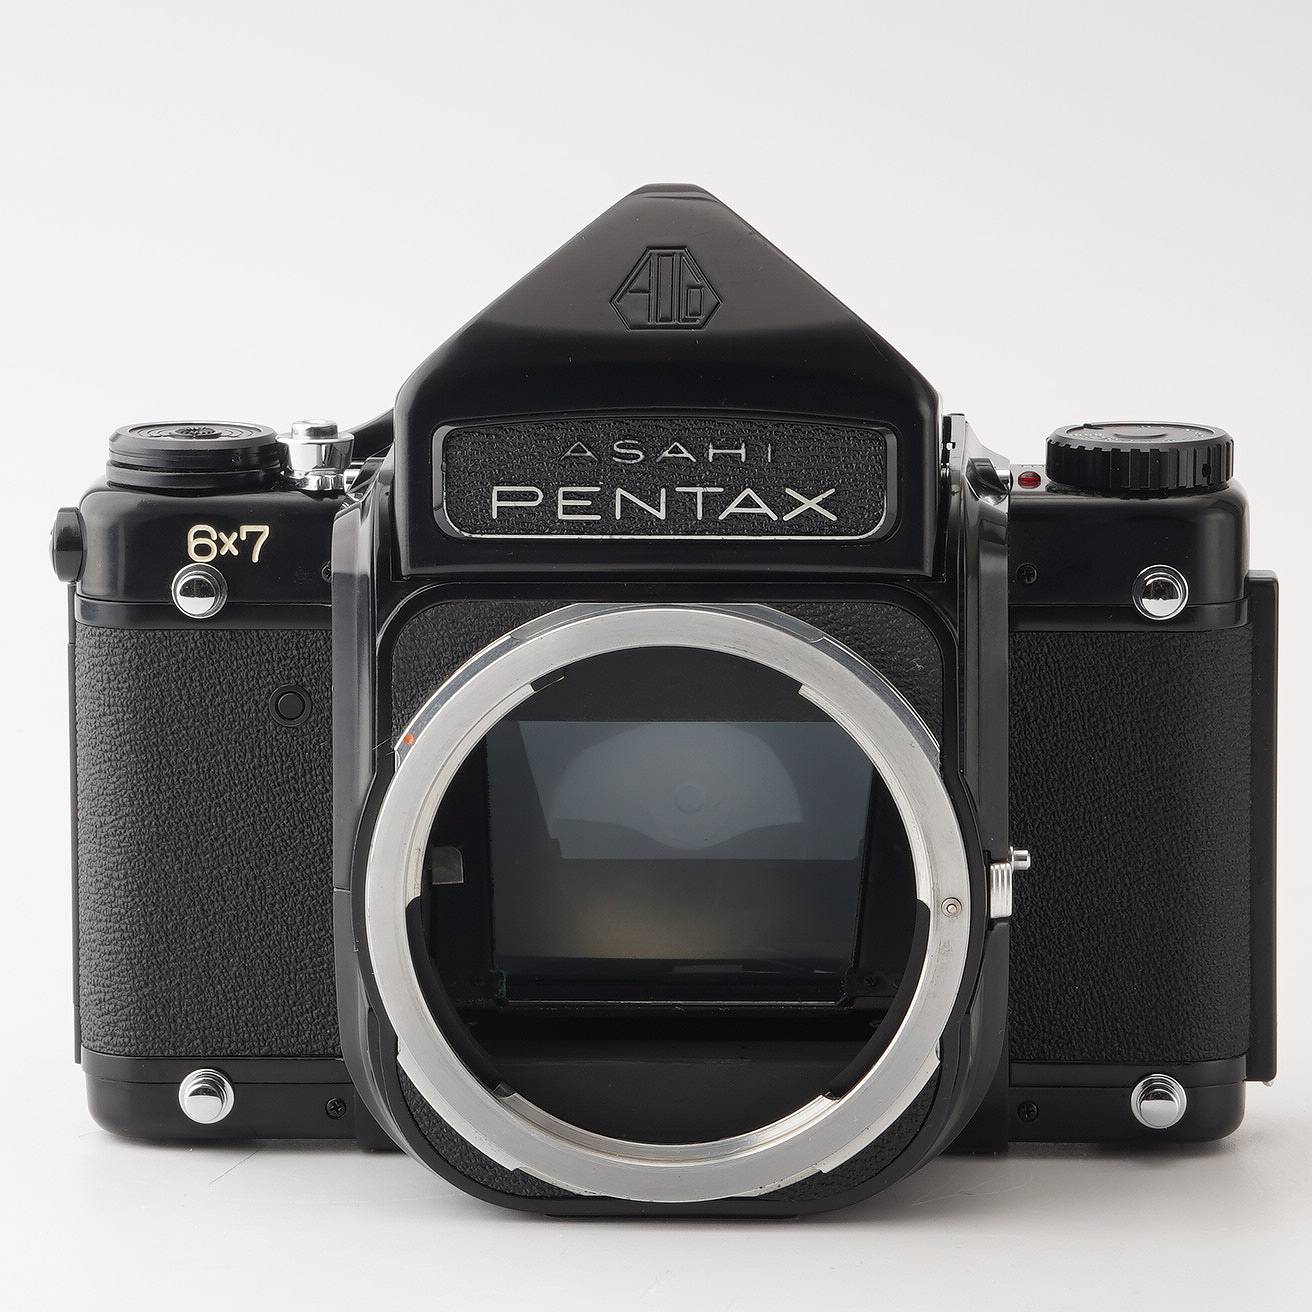 ペンタックス PENTAX 6x7 中判カメラ フィルムカメラ